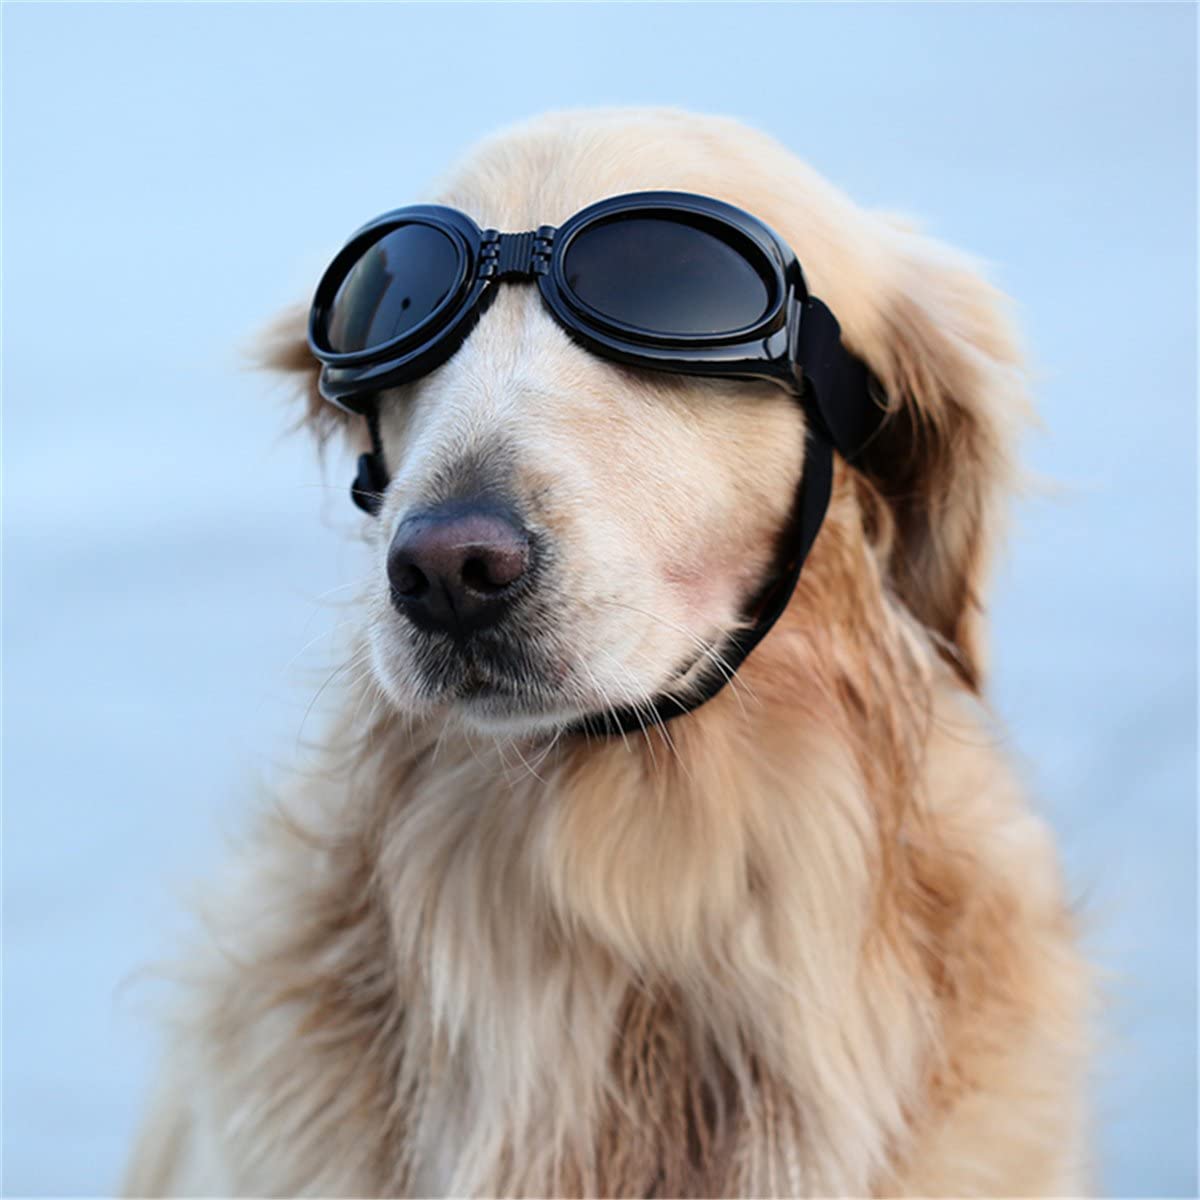 Hình ảnh chất lượng của một con chó đeo kính